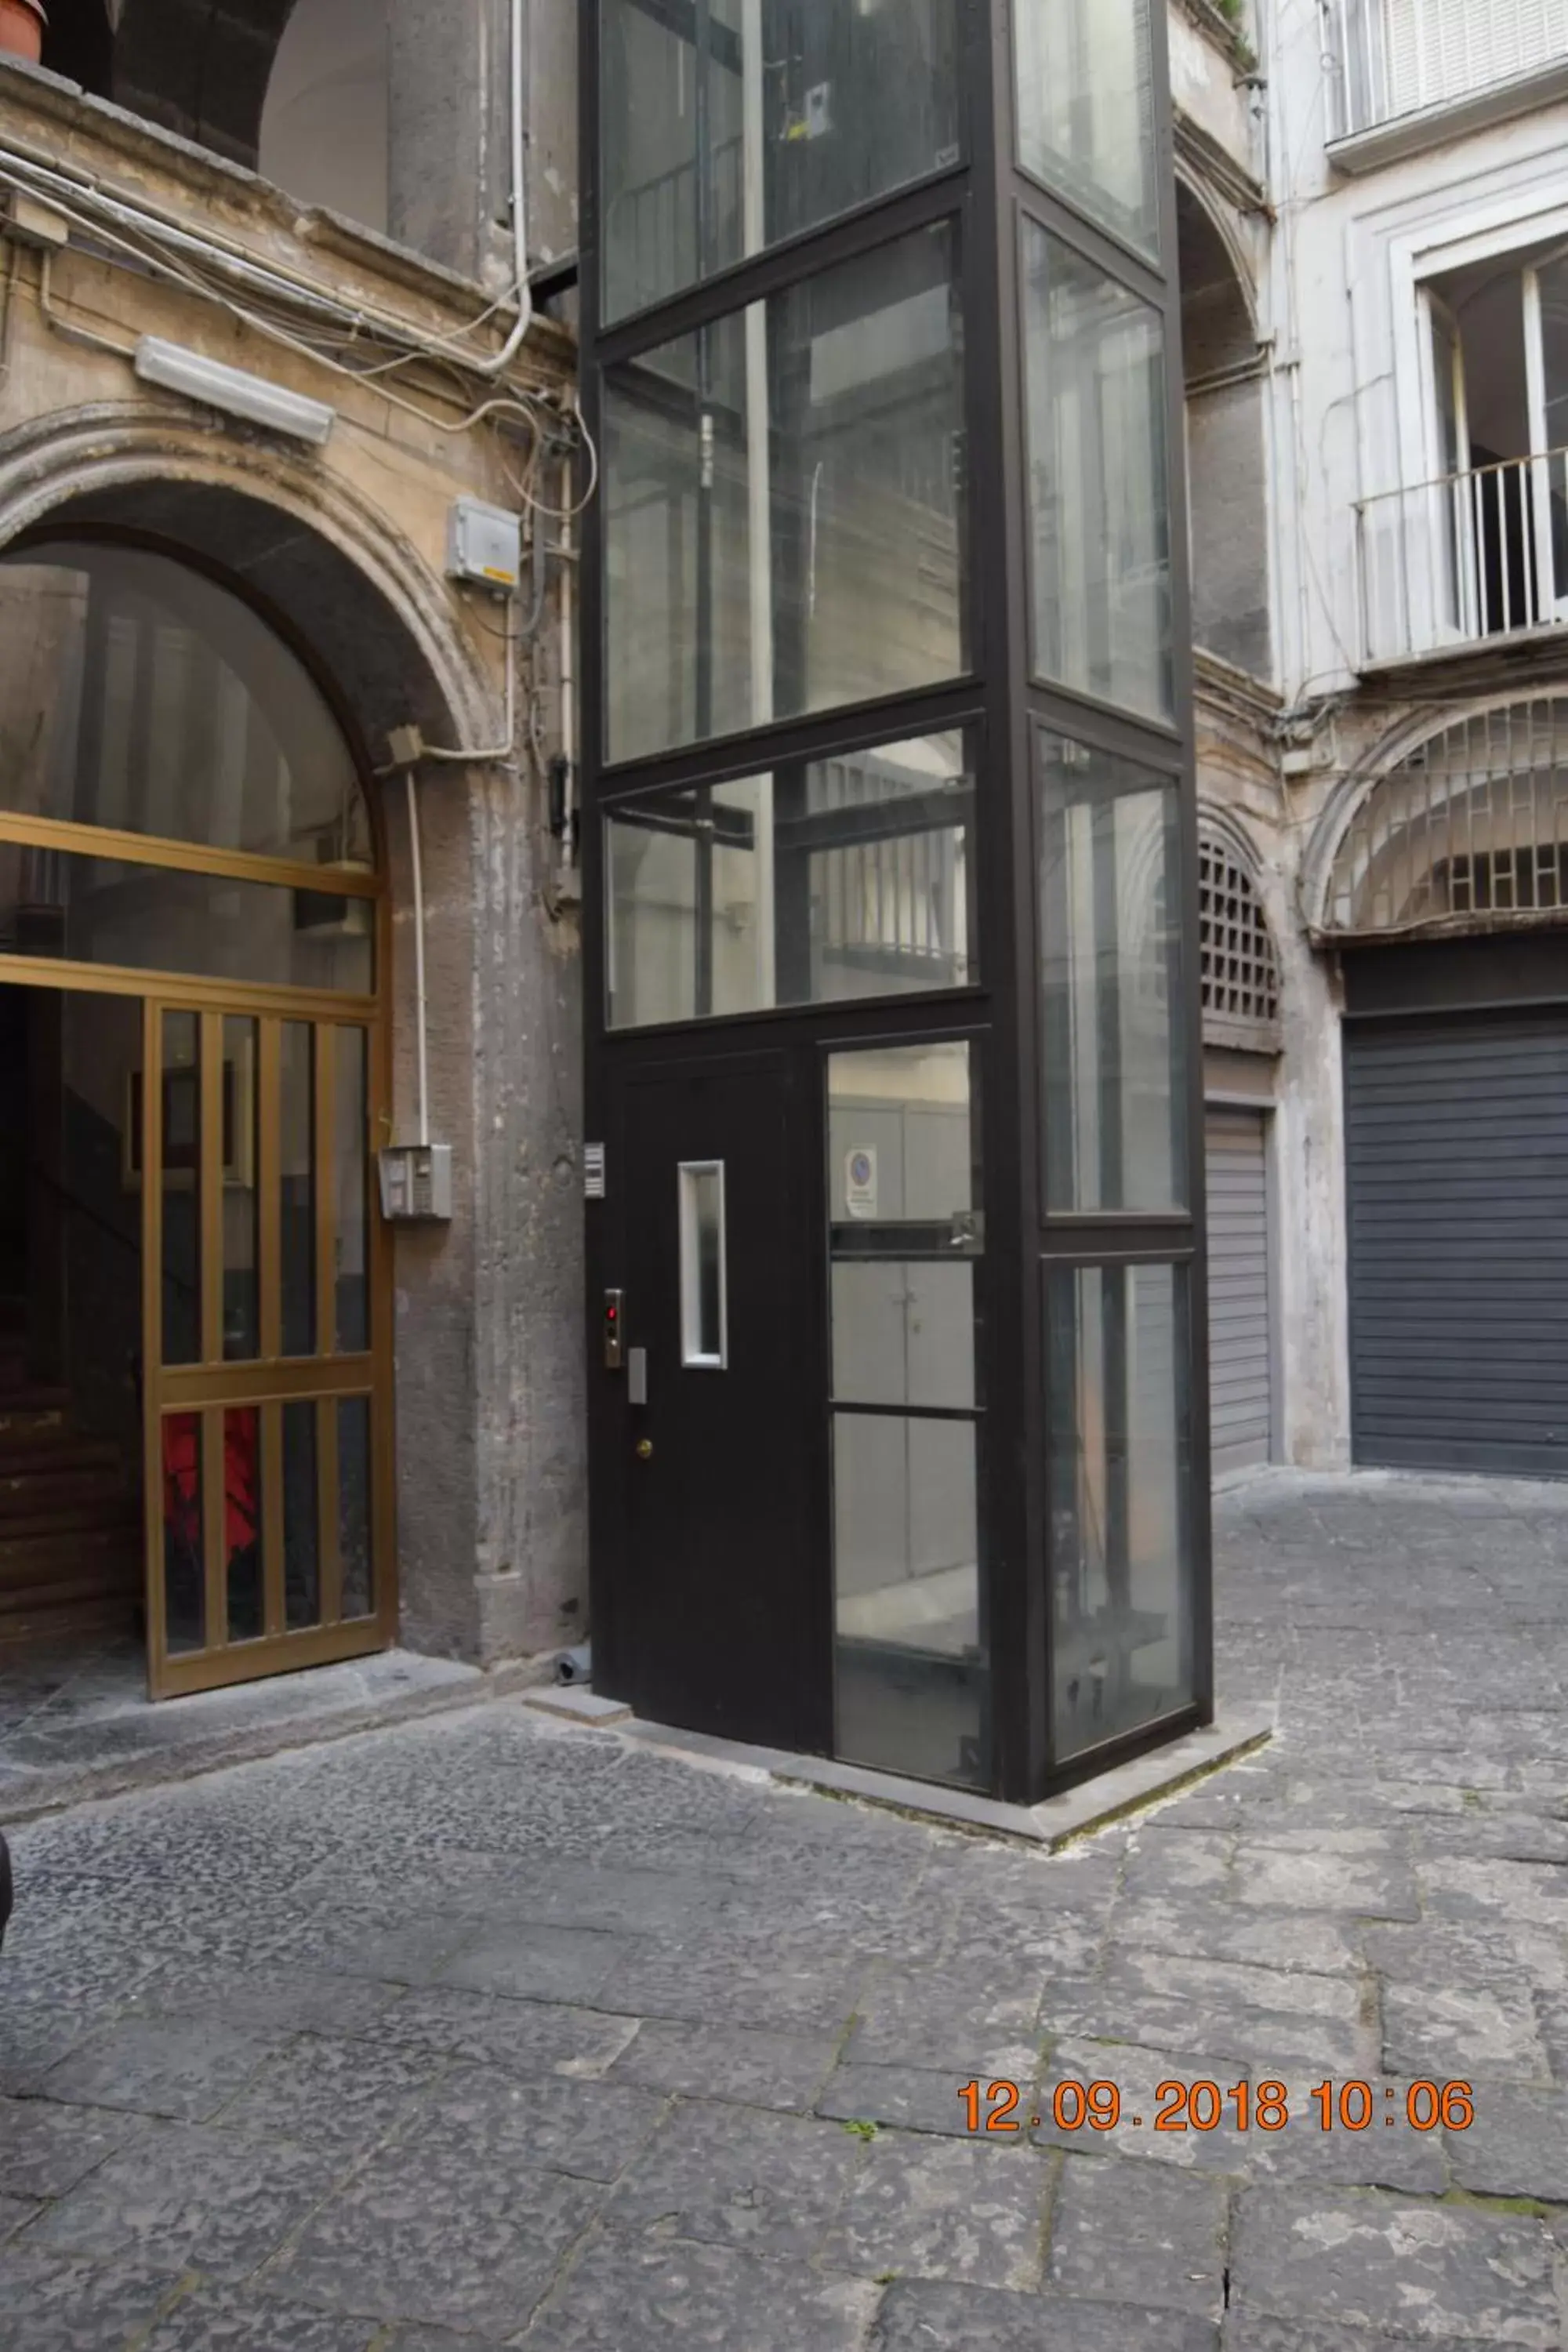 Property building, Facade/Entrance in Domus San Biagio 14